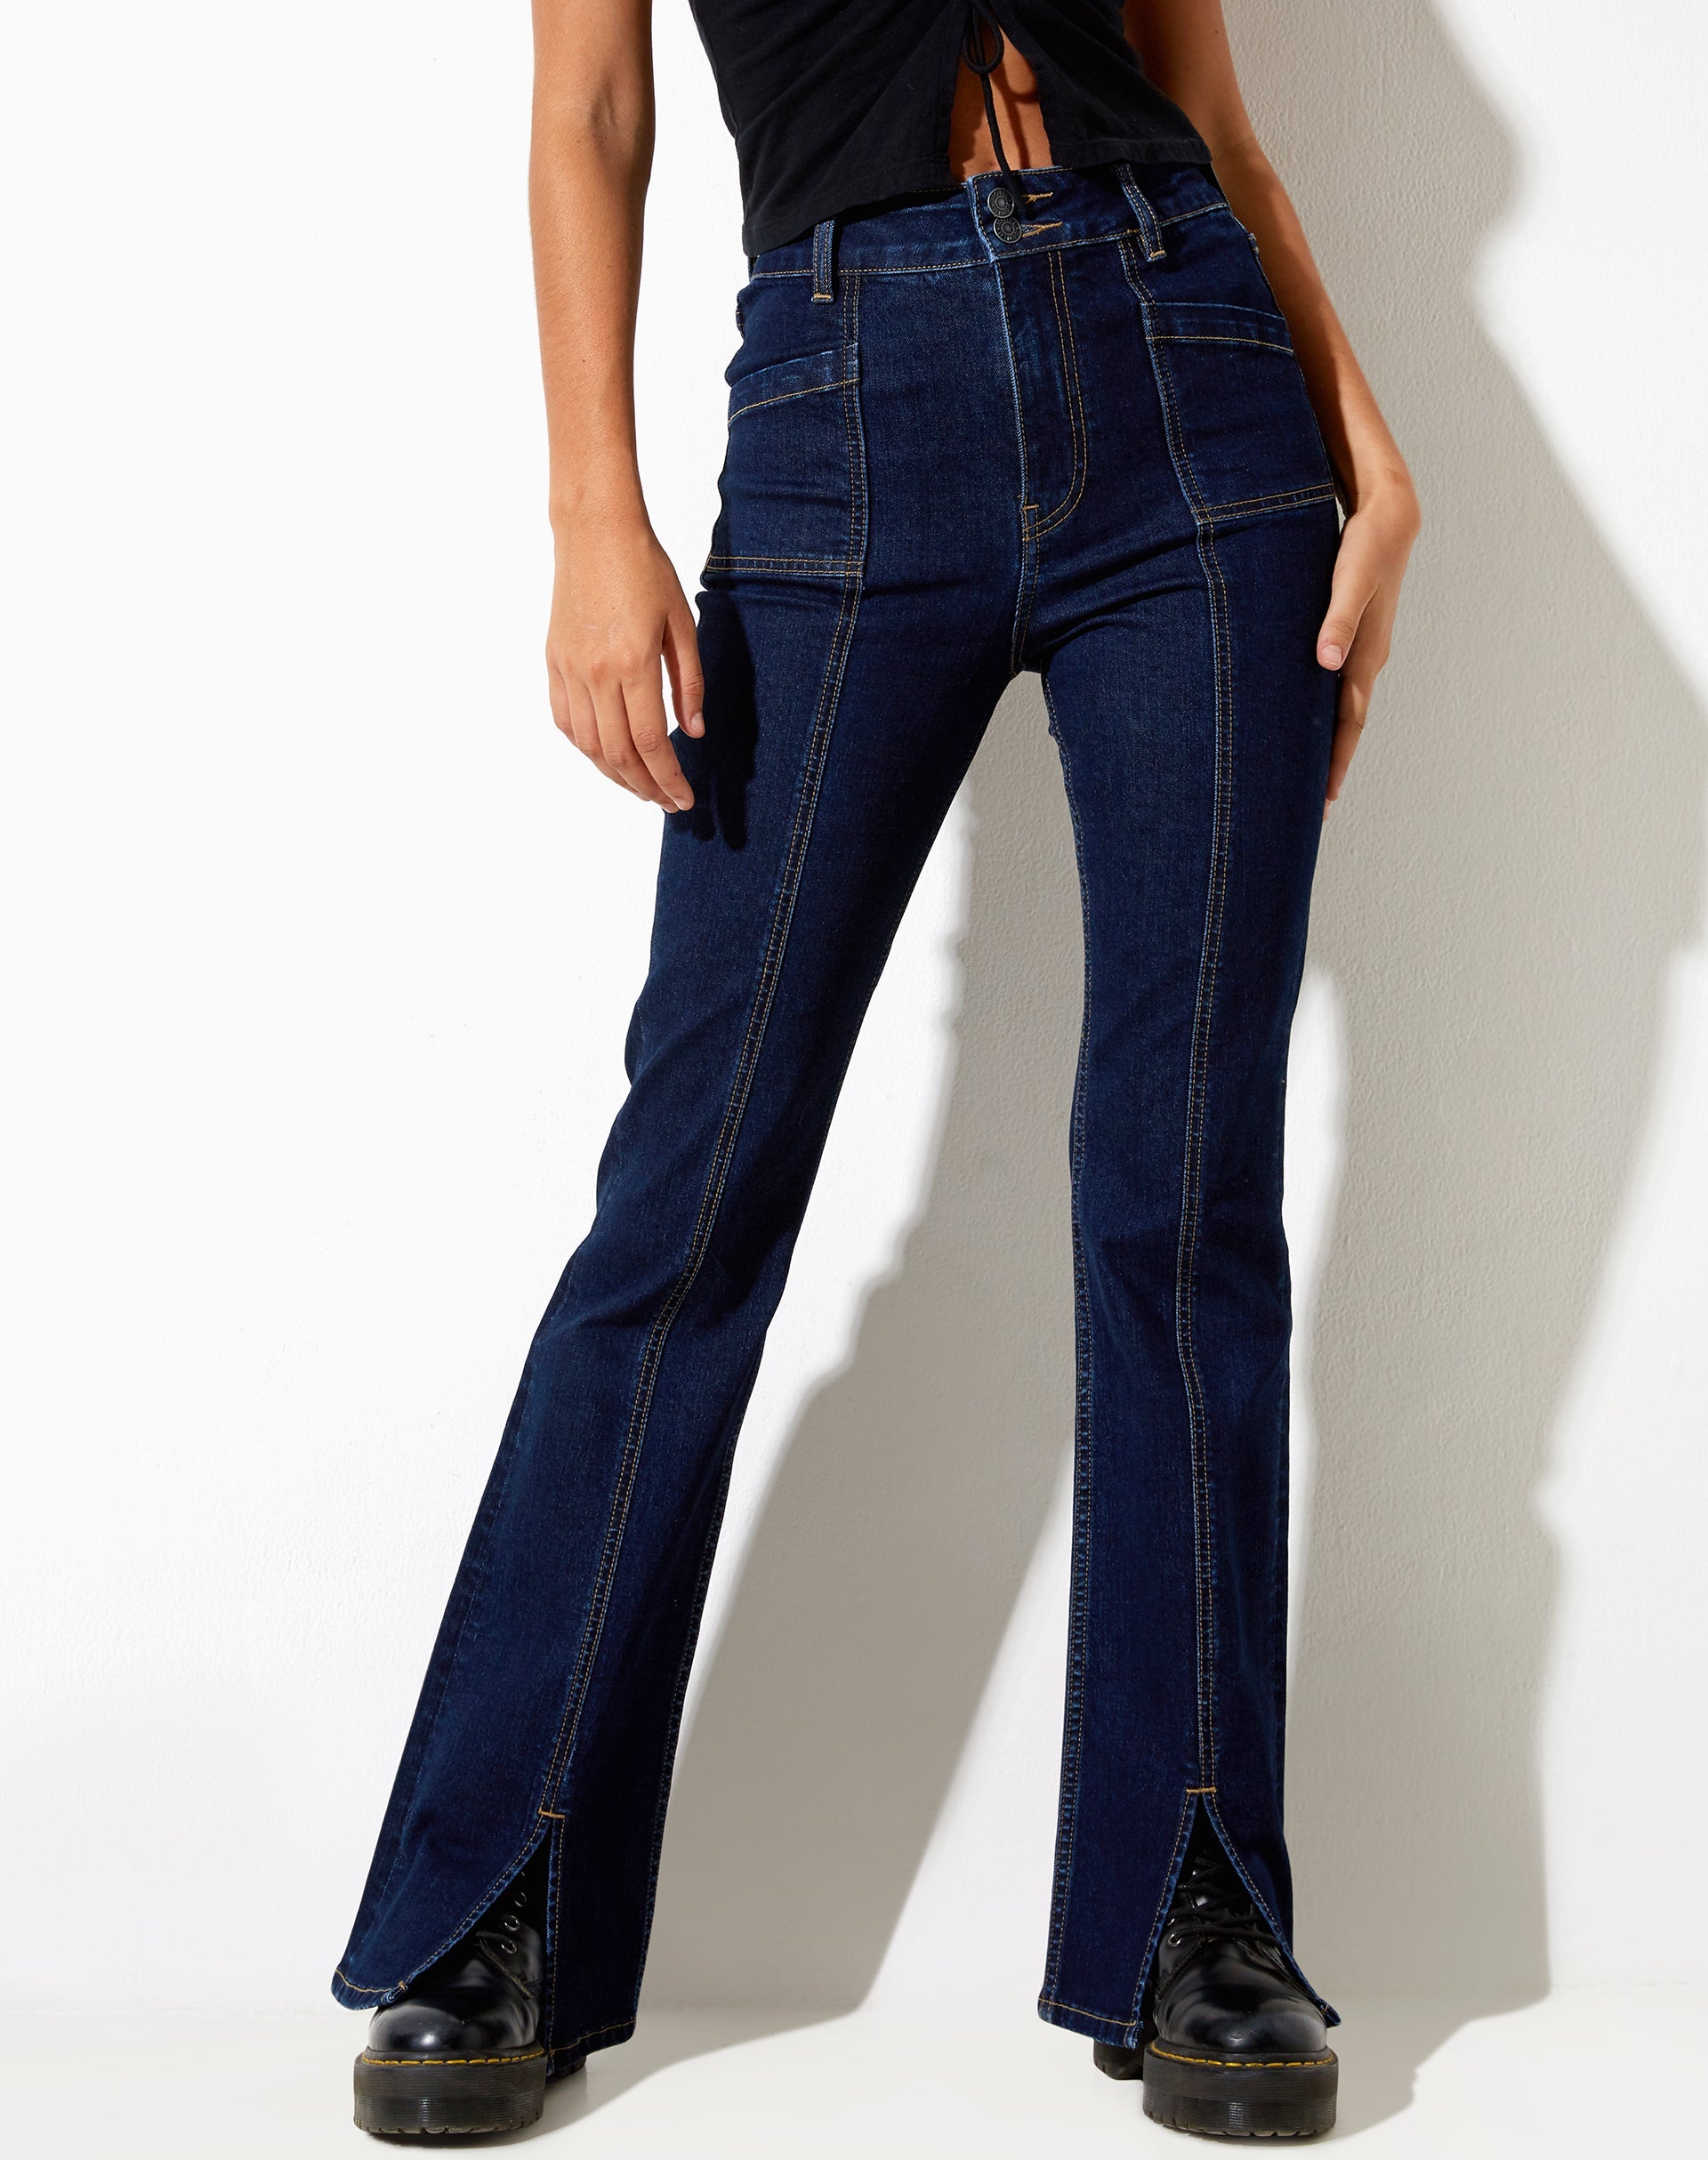 Image of Seam Split Jeans in Indigo Blue